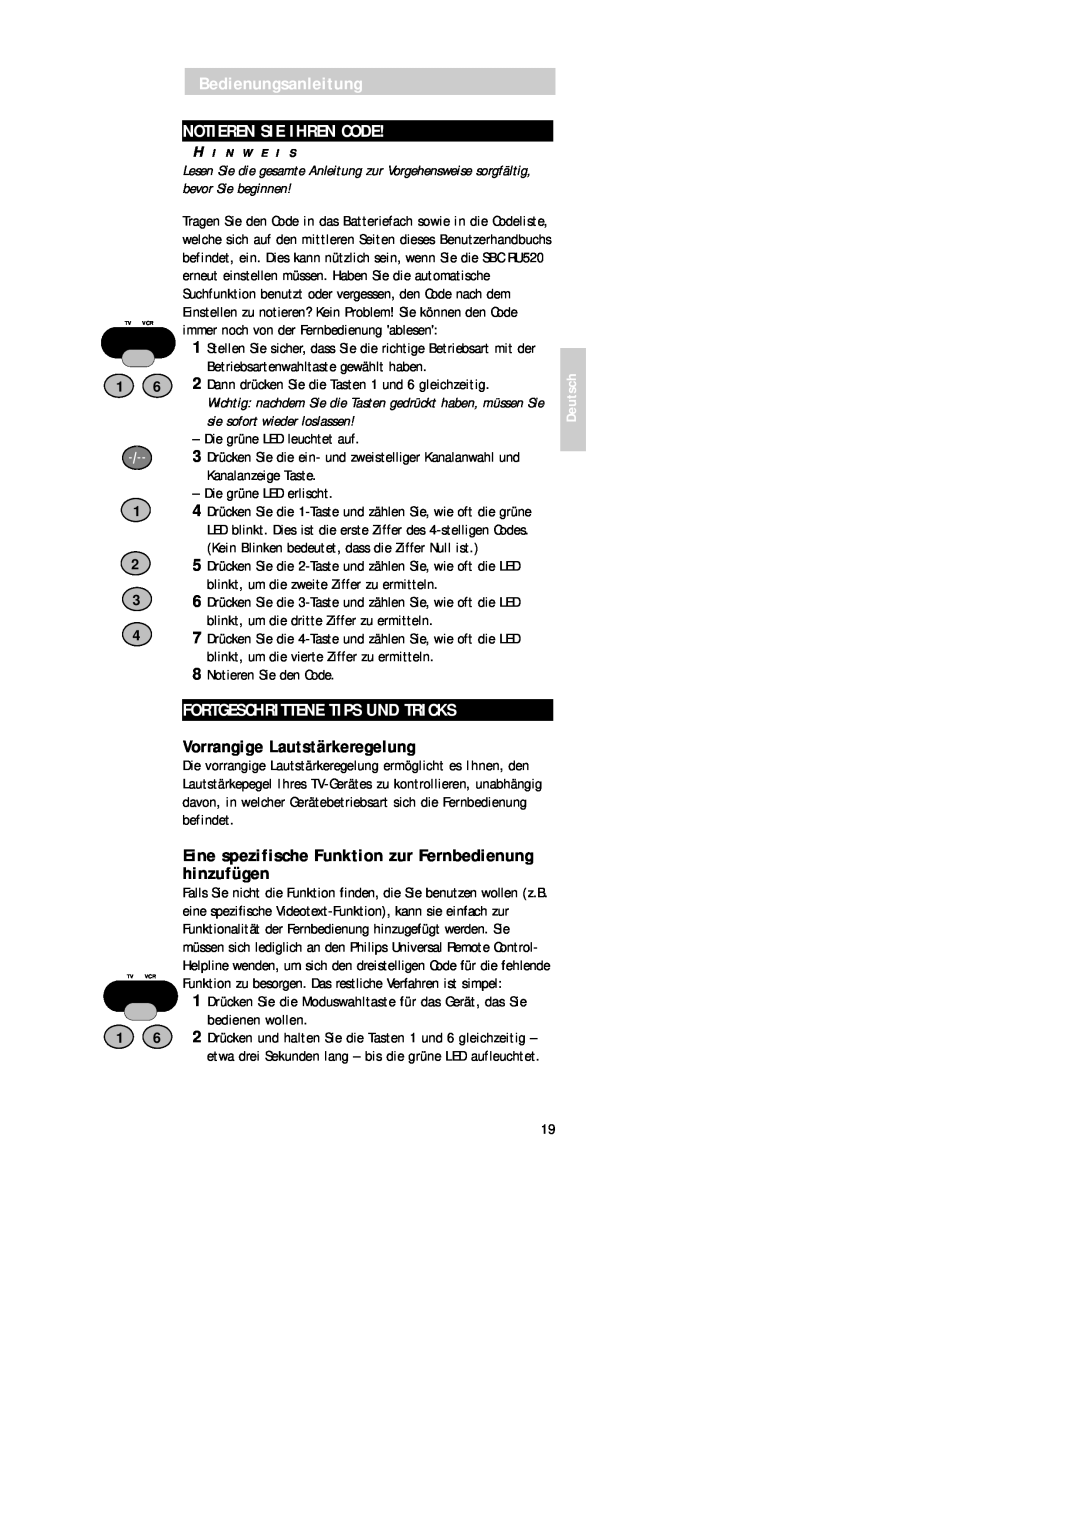 Philips SBC RU 520 manual Bedienungsanleitung NOTIEREN SIE IHREN CODE, Fortgeschrittene Tips Und Tricks, Deutsch 